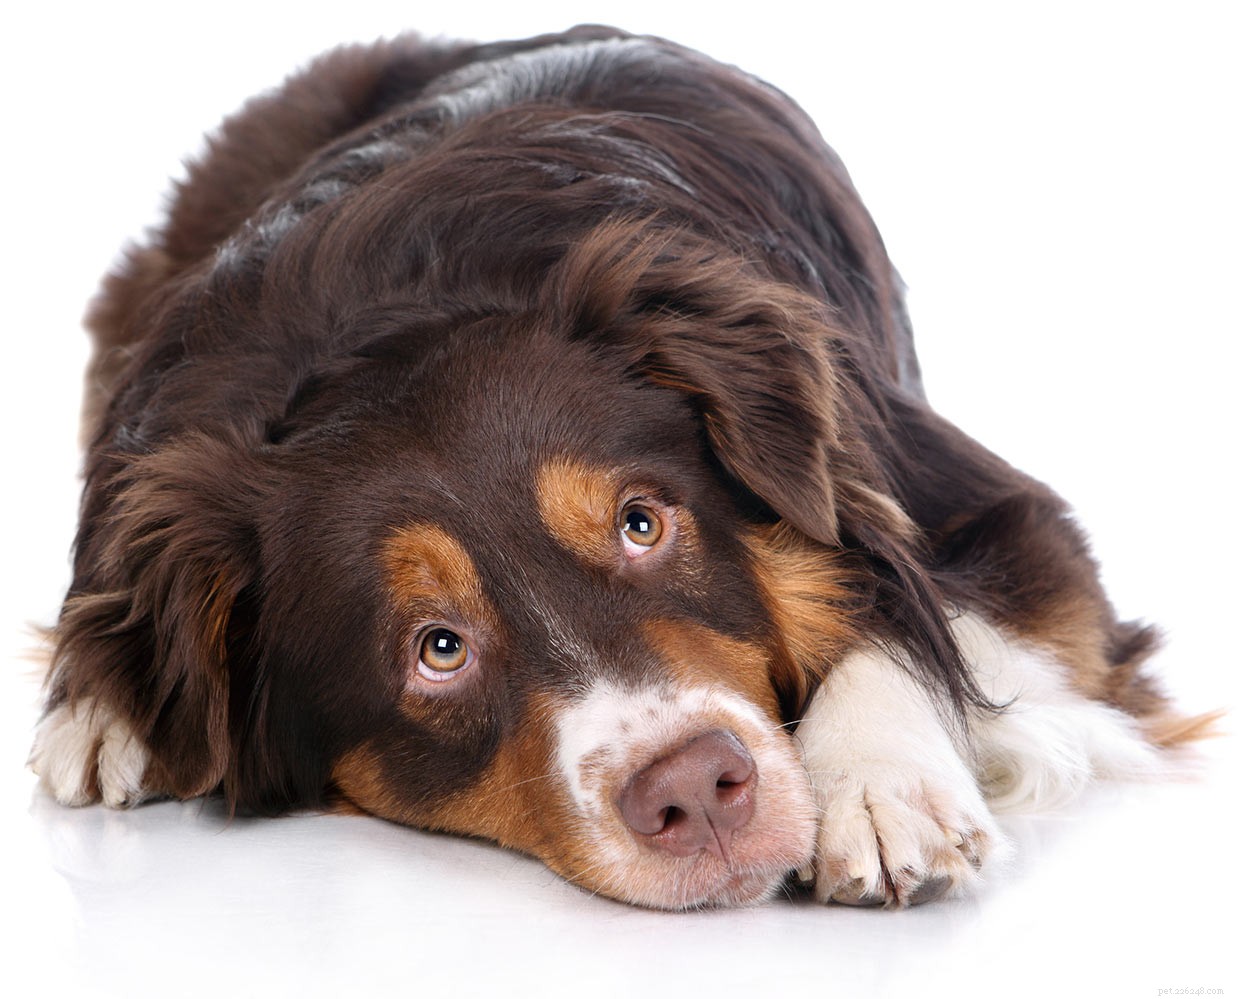 Perossido di idrogeno per cani:per cosa posso usarlo in sicurezza?